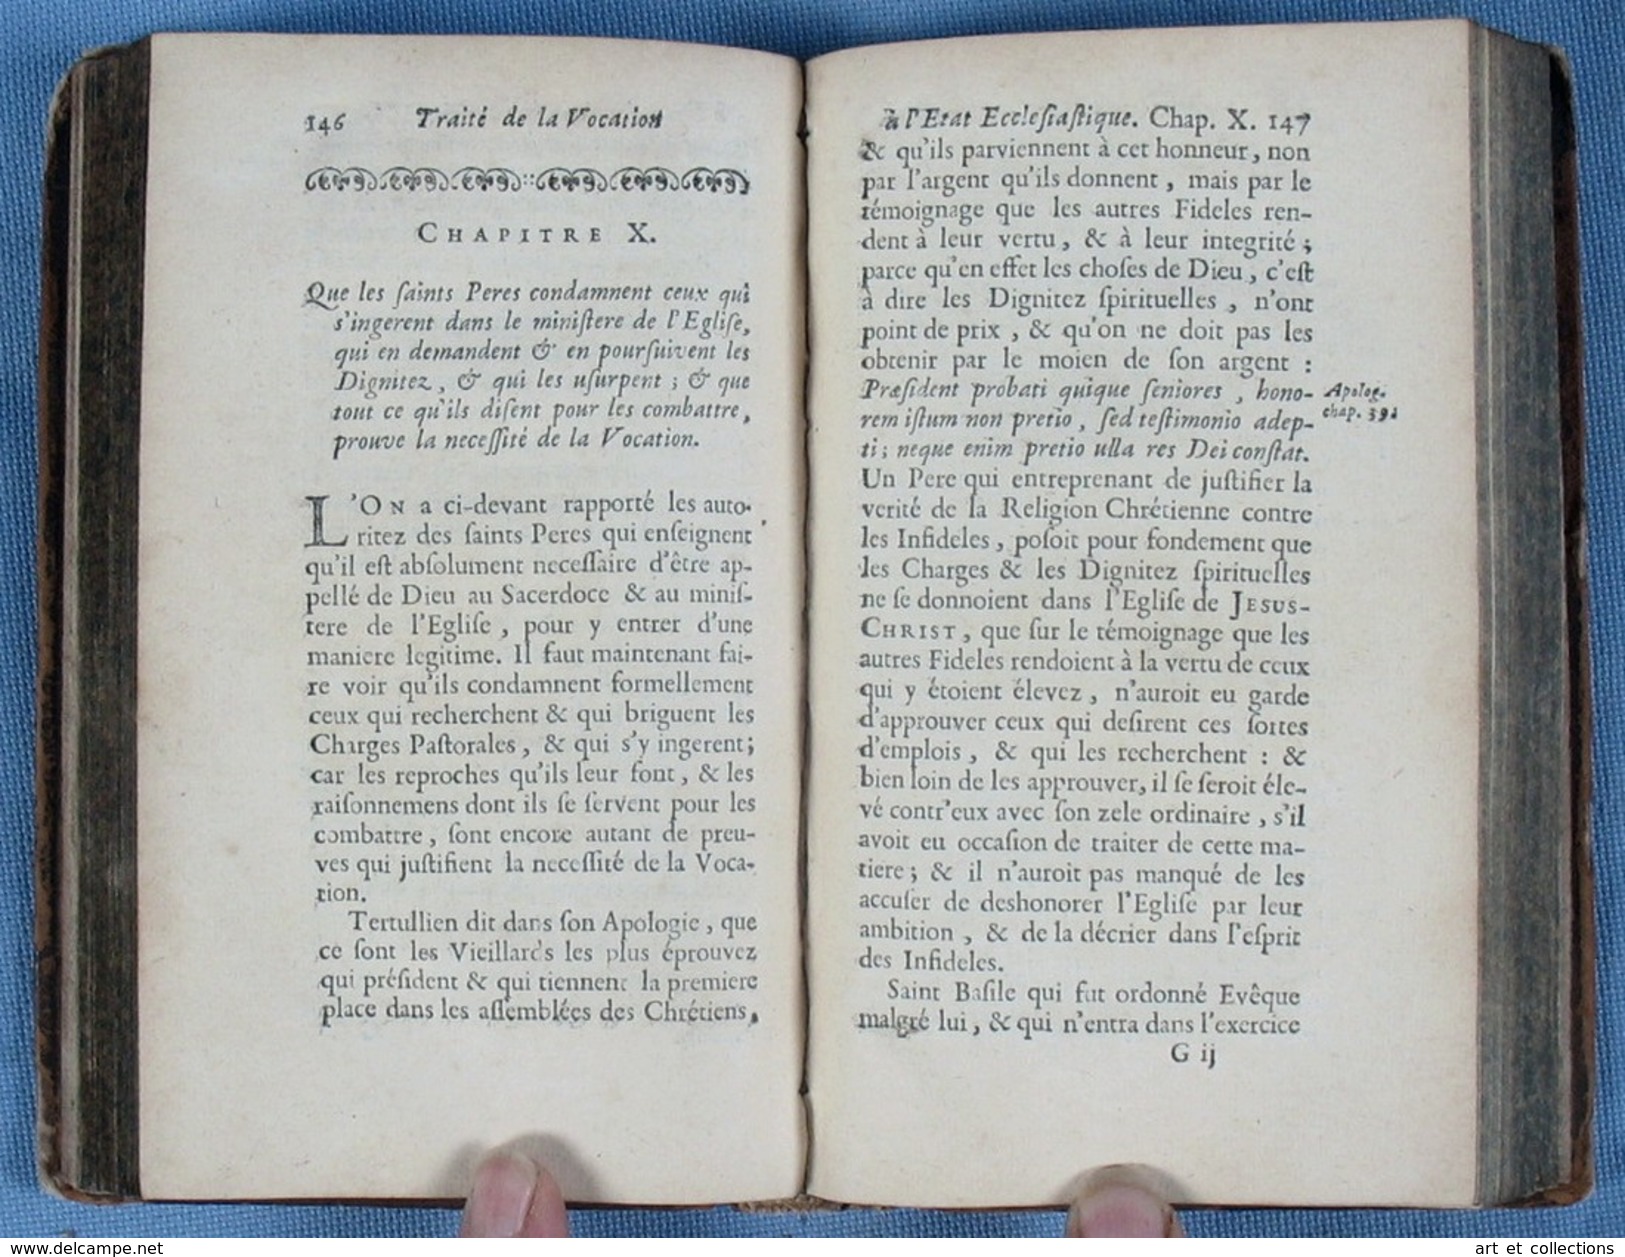 TRAITÉ De La VOCATION à L'ÉTAT ECCLÉSIASTIQUE / Jean GIRARD / Pralard éditeur En Première Édition De 1695 - Before 18th Century